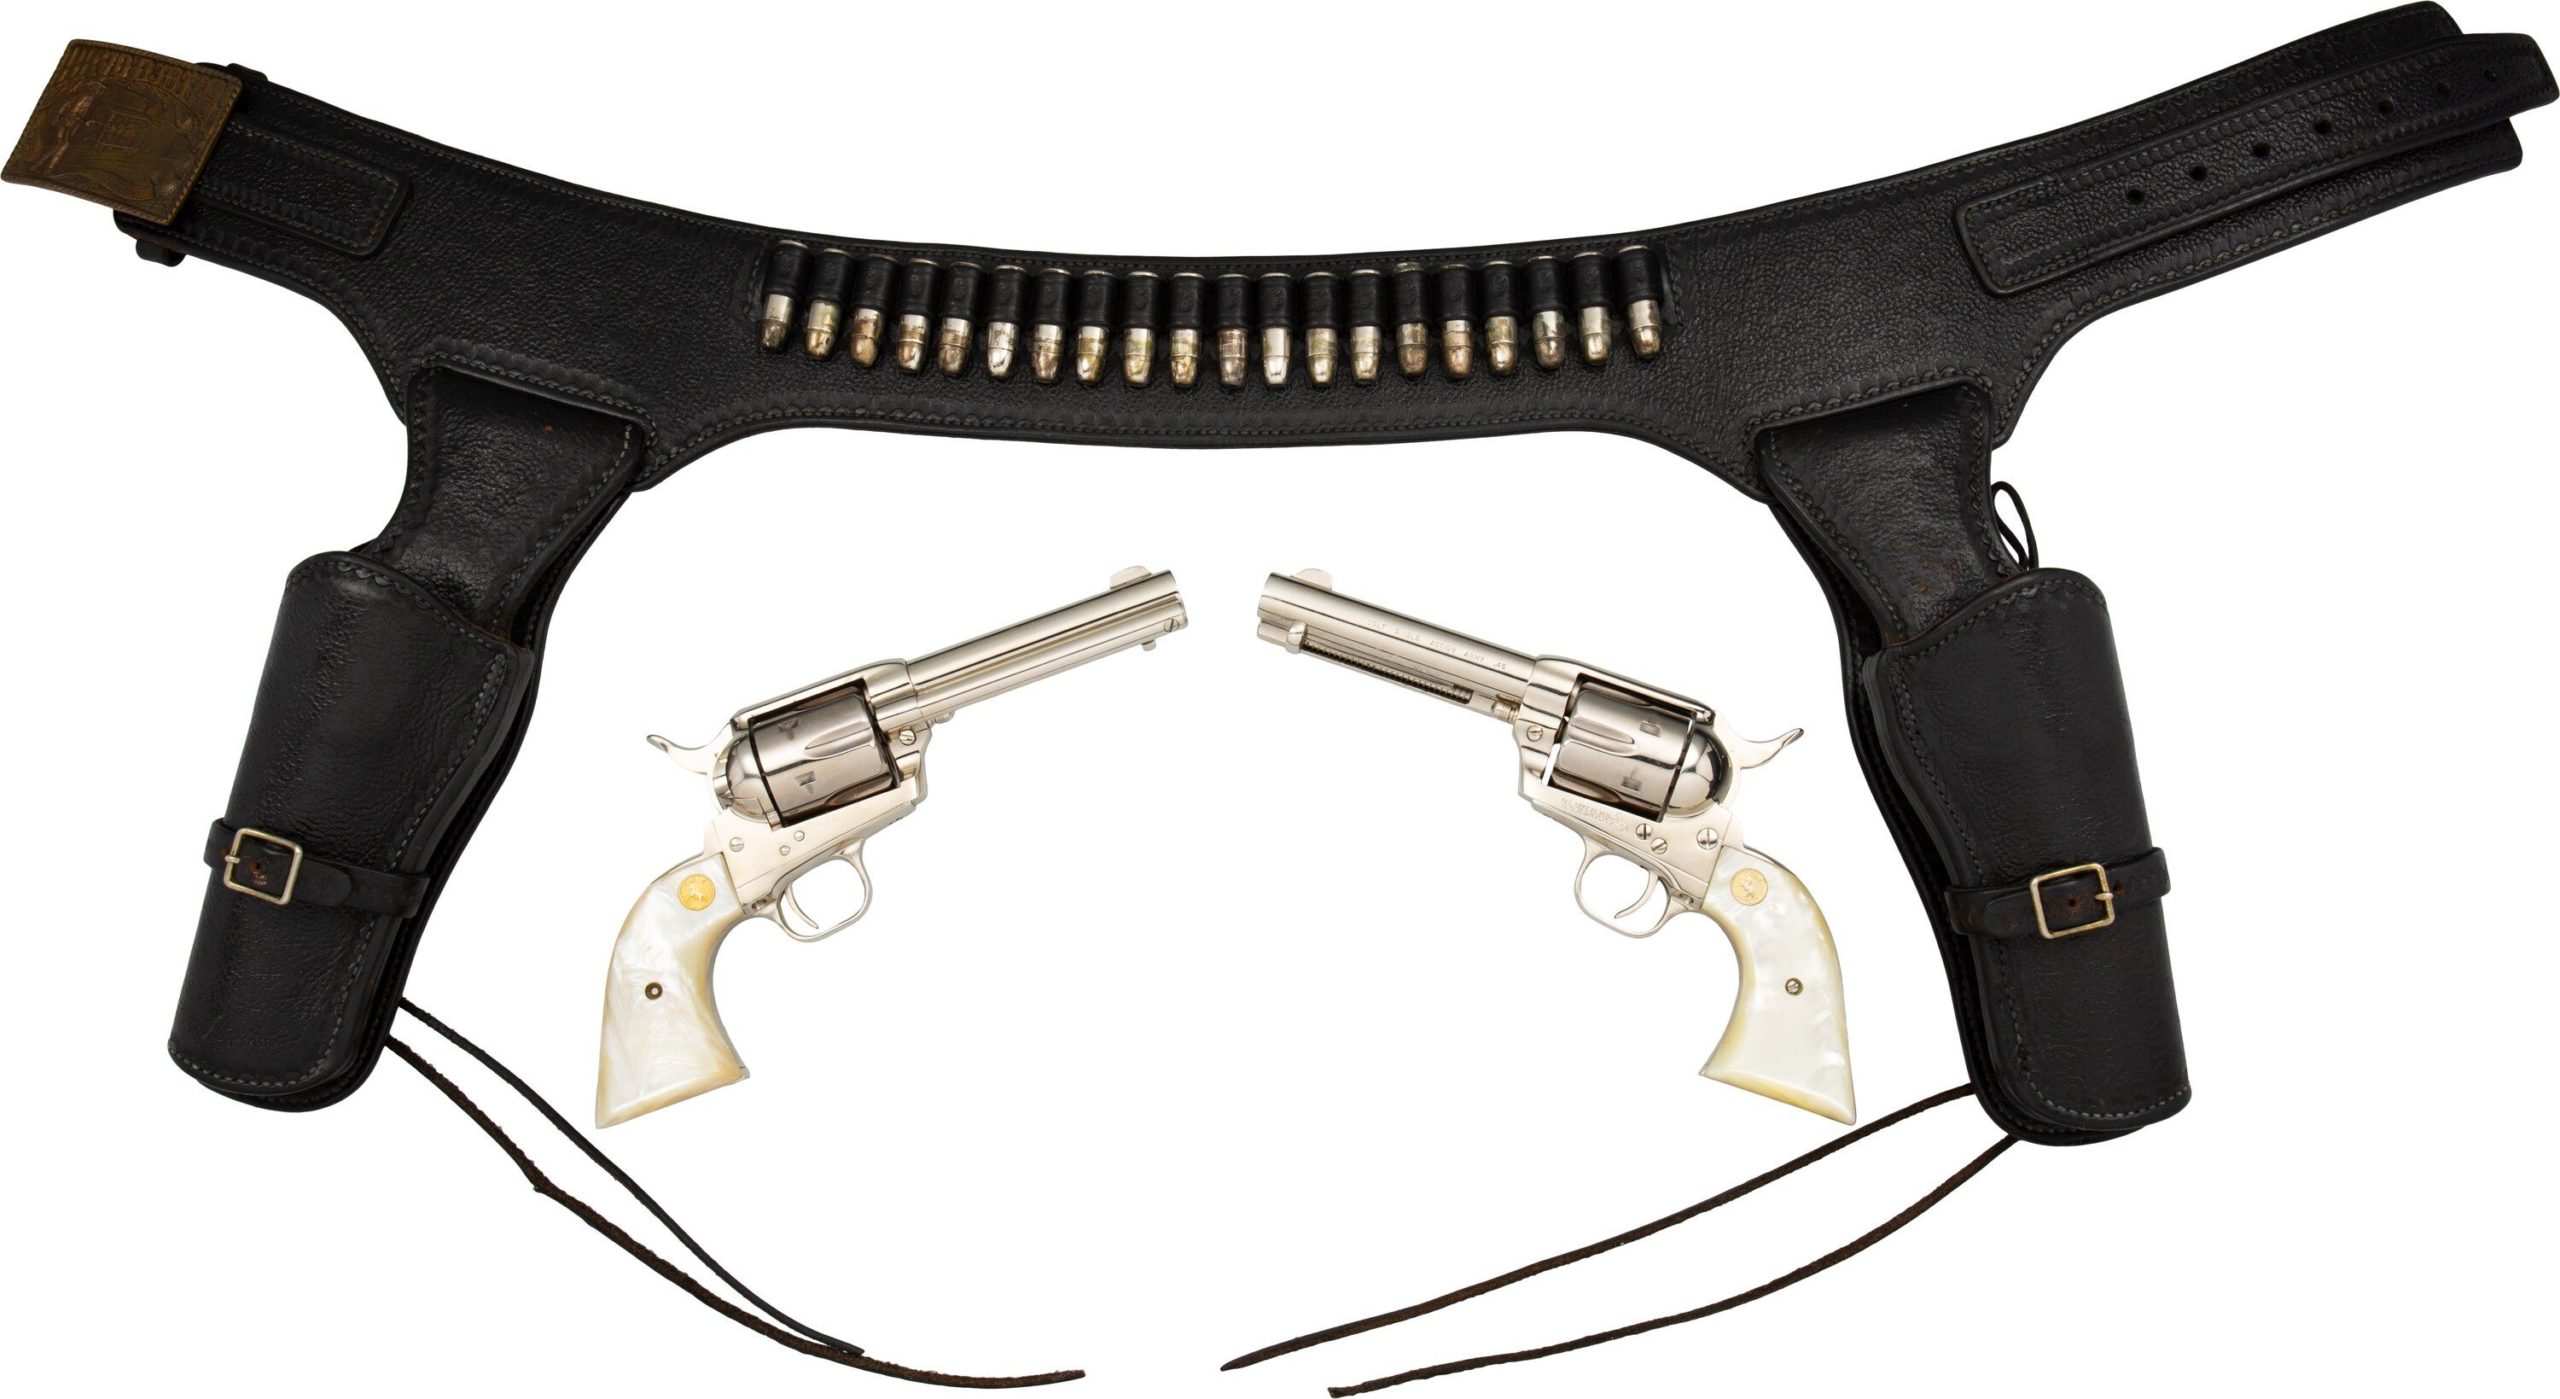 Wild West Hip Gun Belt Holster Old Western Cowboy Leather Pistol